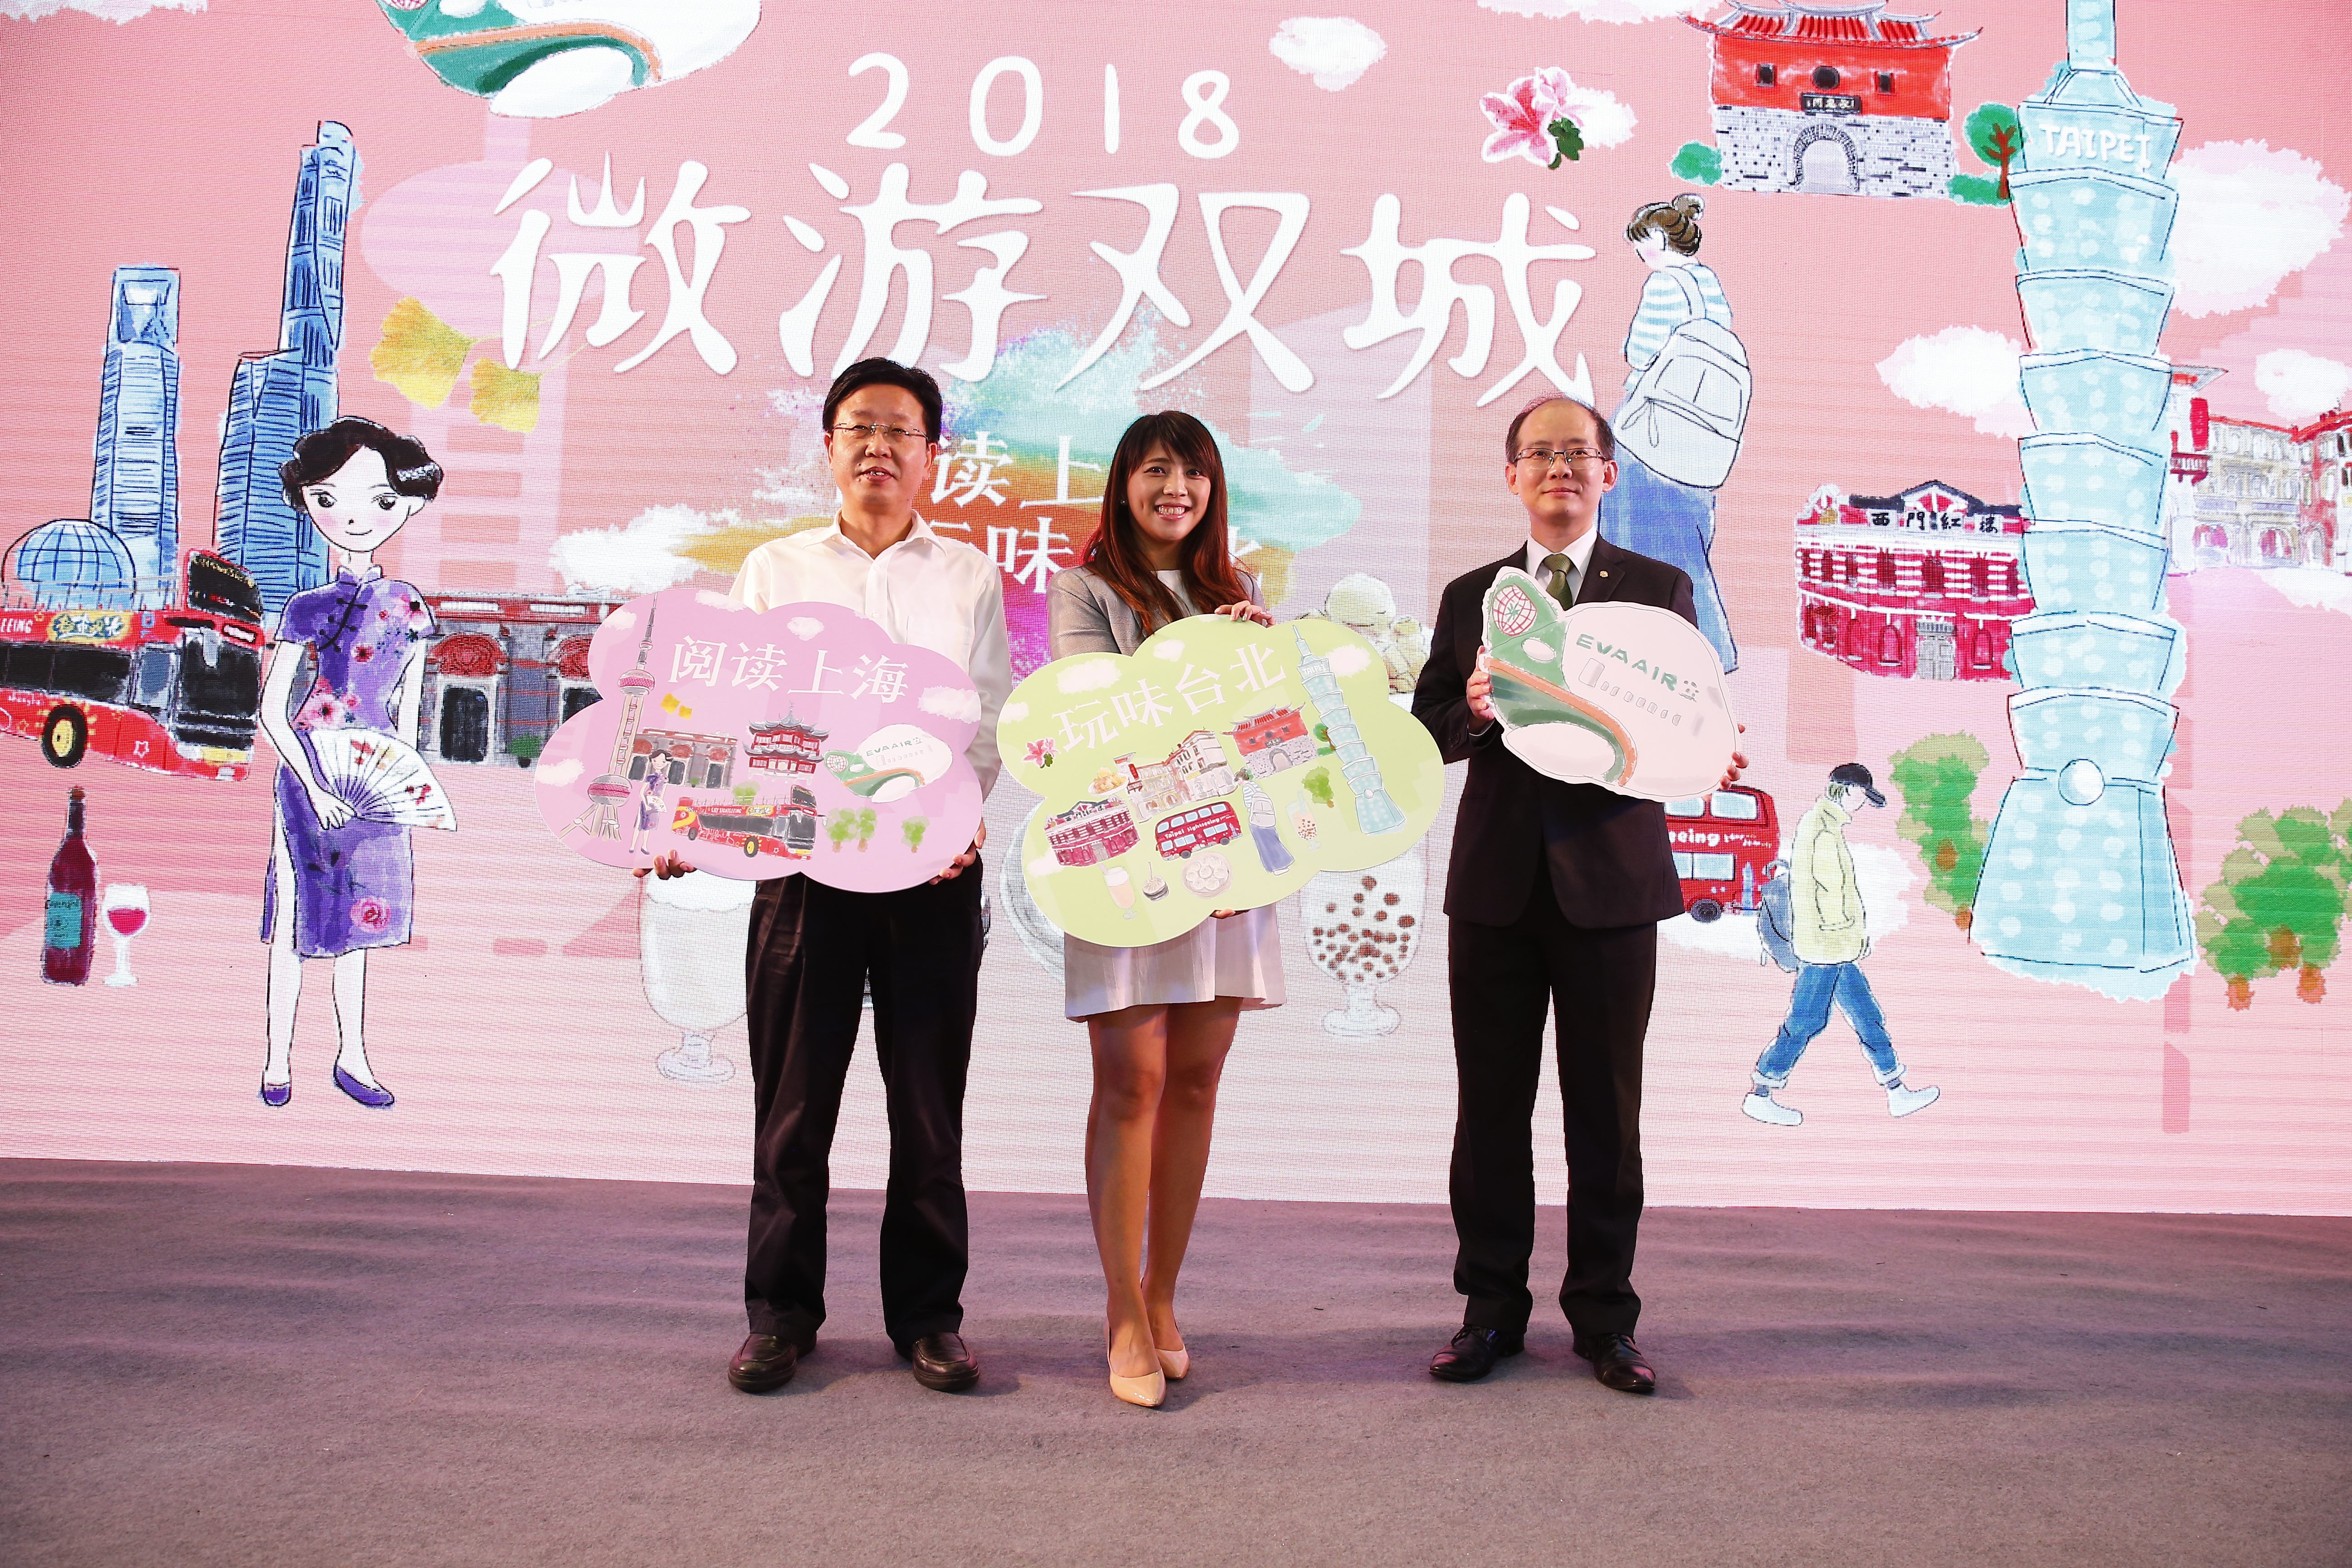 2018微游双城活动由上海旅游局、台北市观光传播局及长荣航空共同推荐